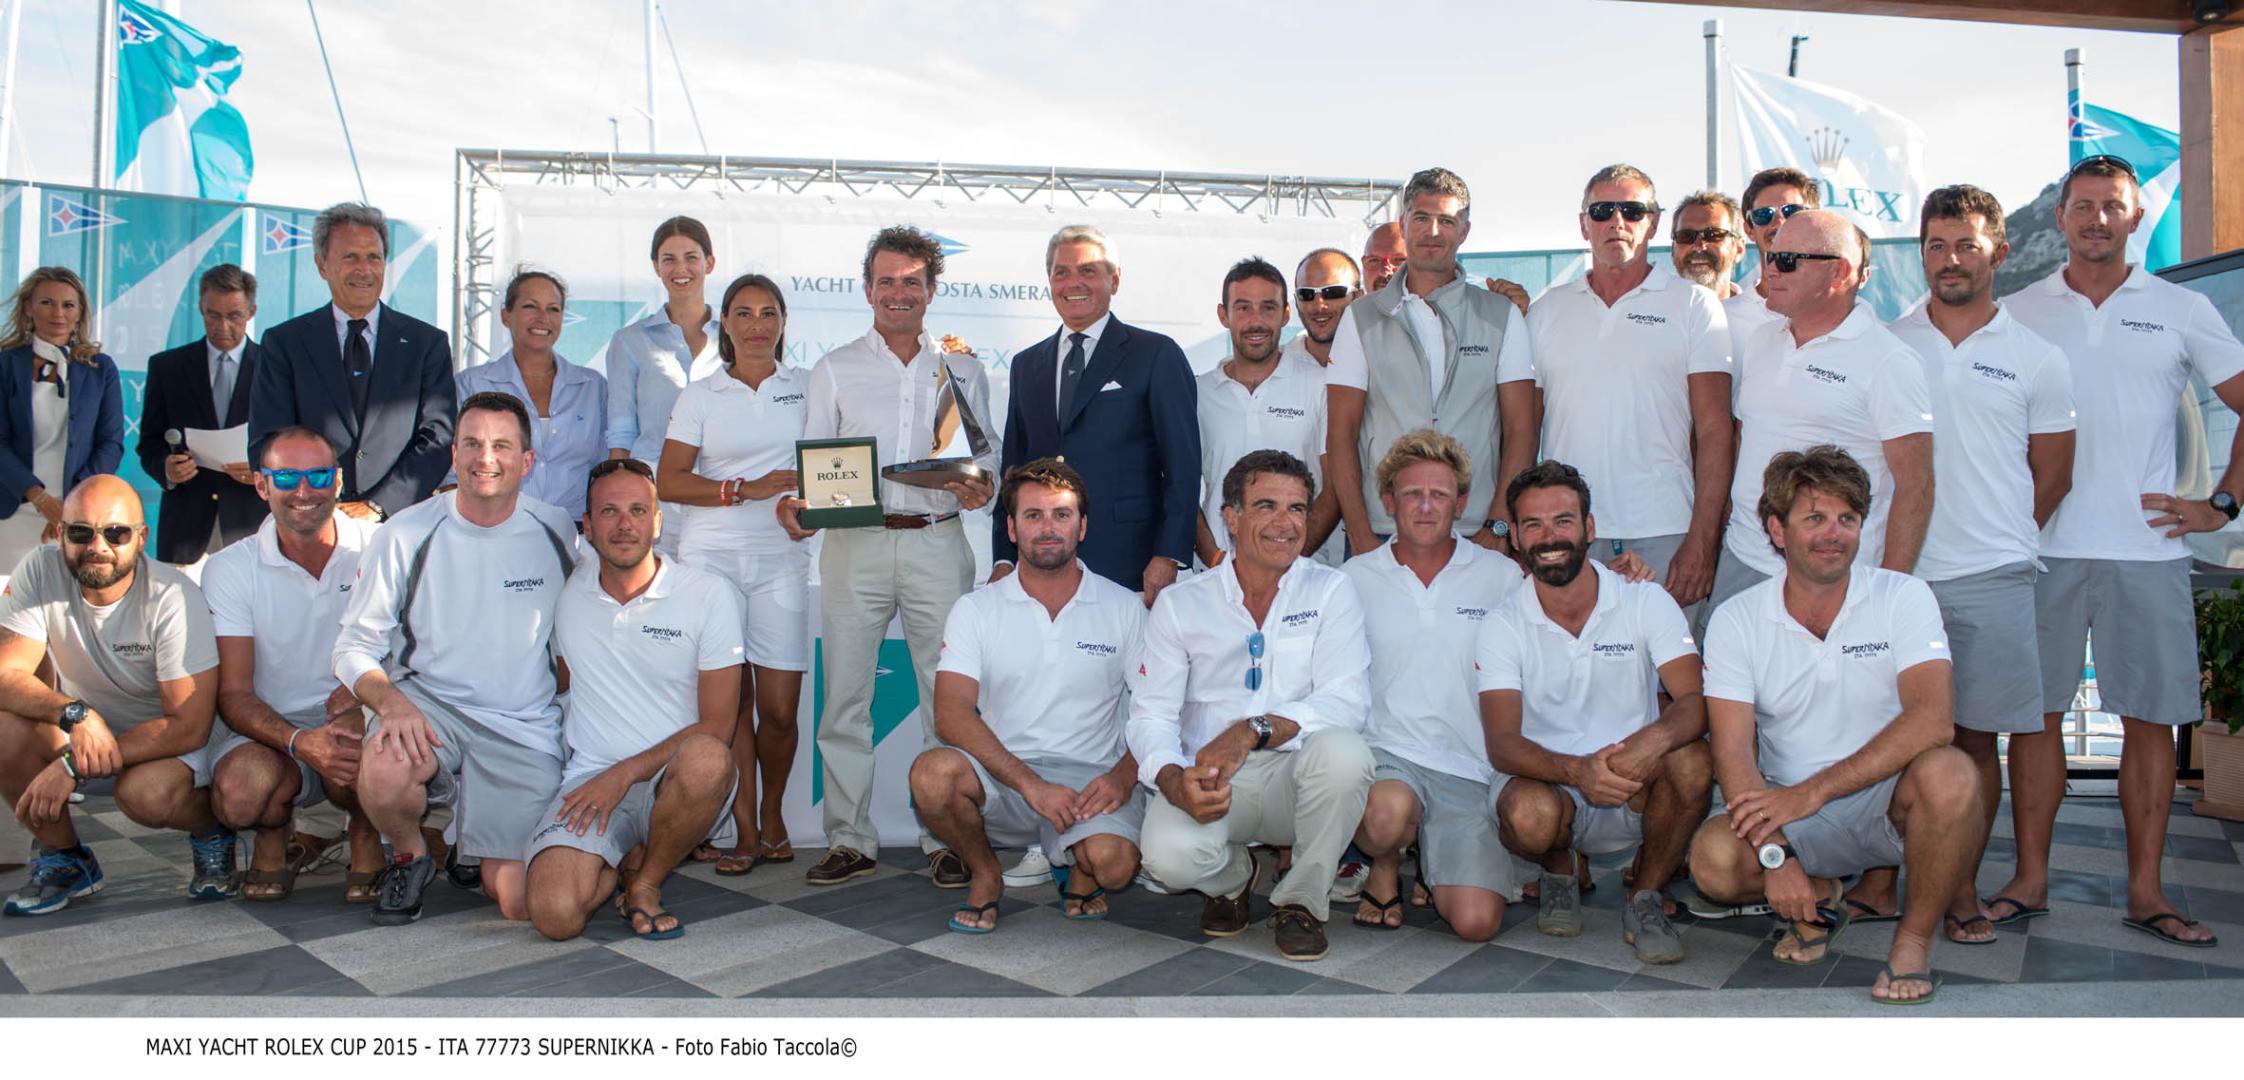 CS Vela - La vittoria di SuperNikka alla Maxi Yacht Rolex Cup